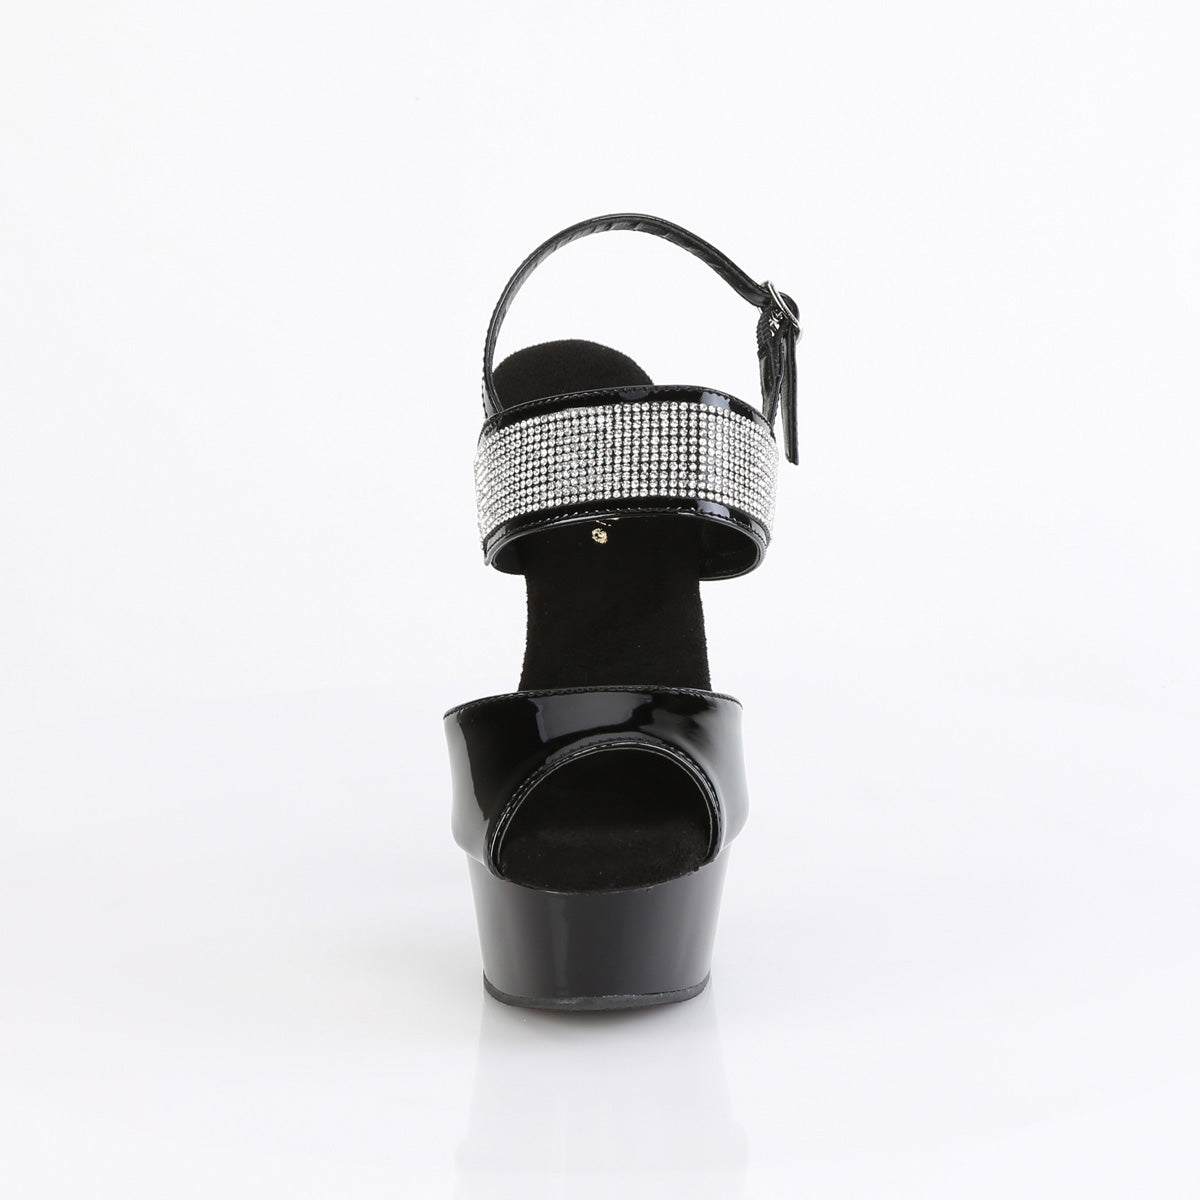 DELIGHT-639 Pleaser Black Patent Platform Shoes [Exotic Dance Shoes]